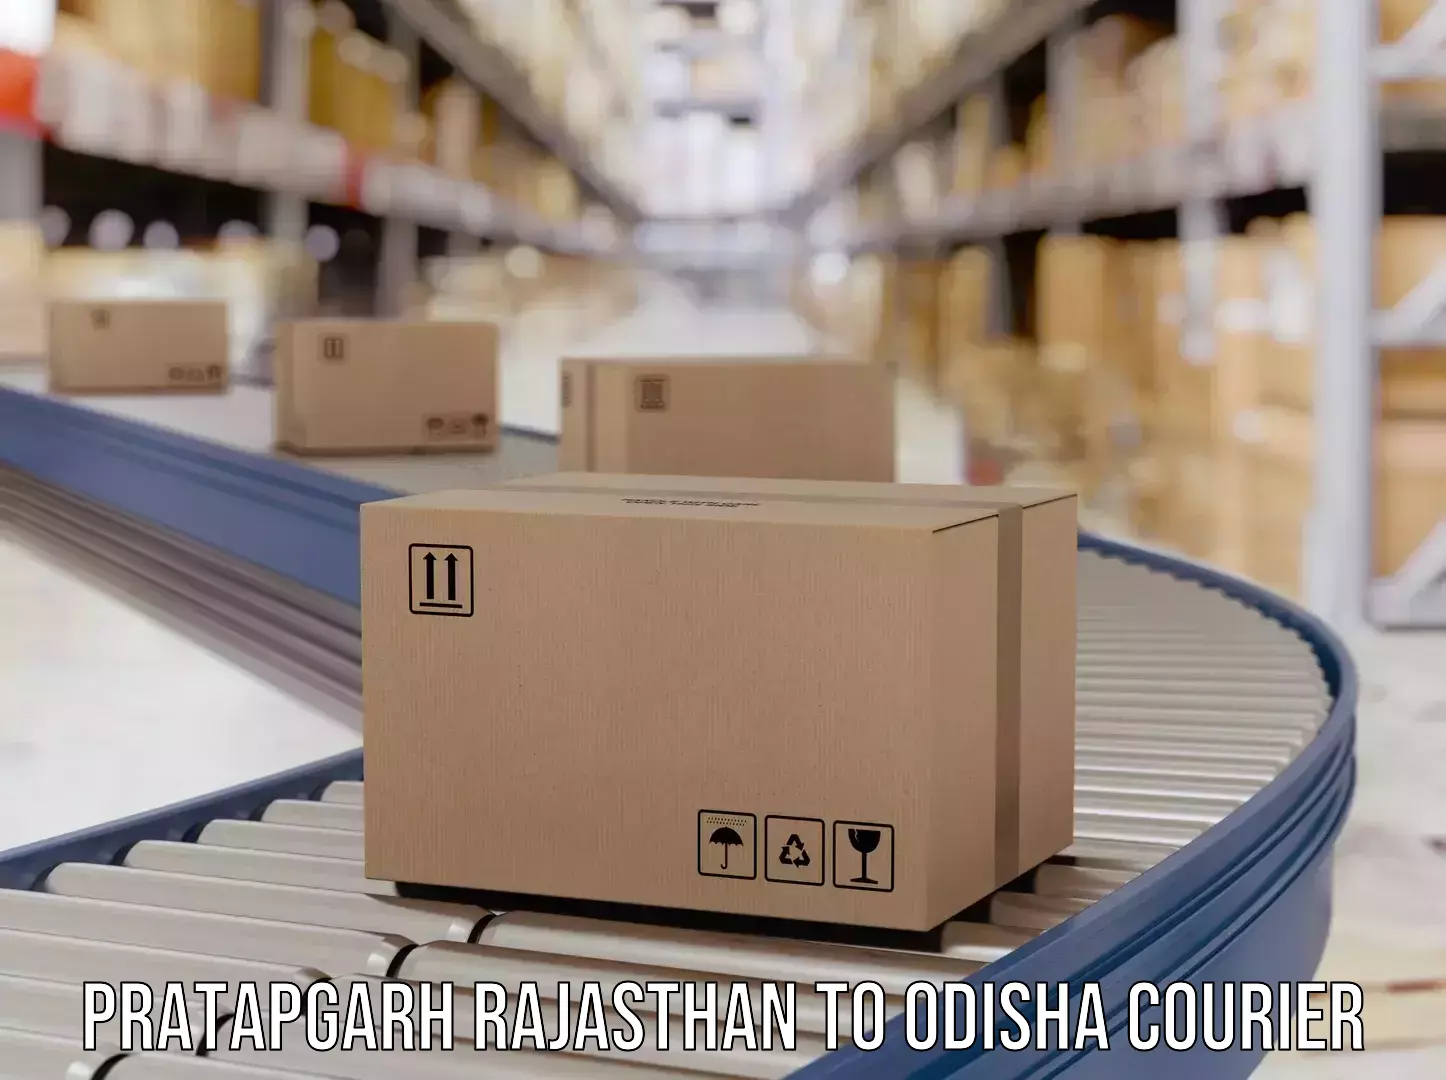 Affordable parcel service Pratapgarh Rajasthan to Gajapati